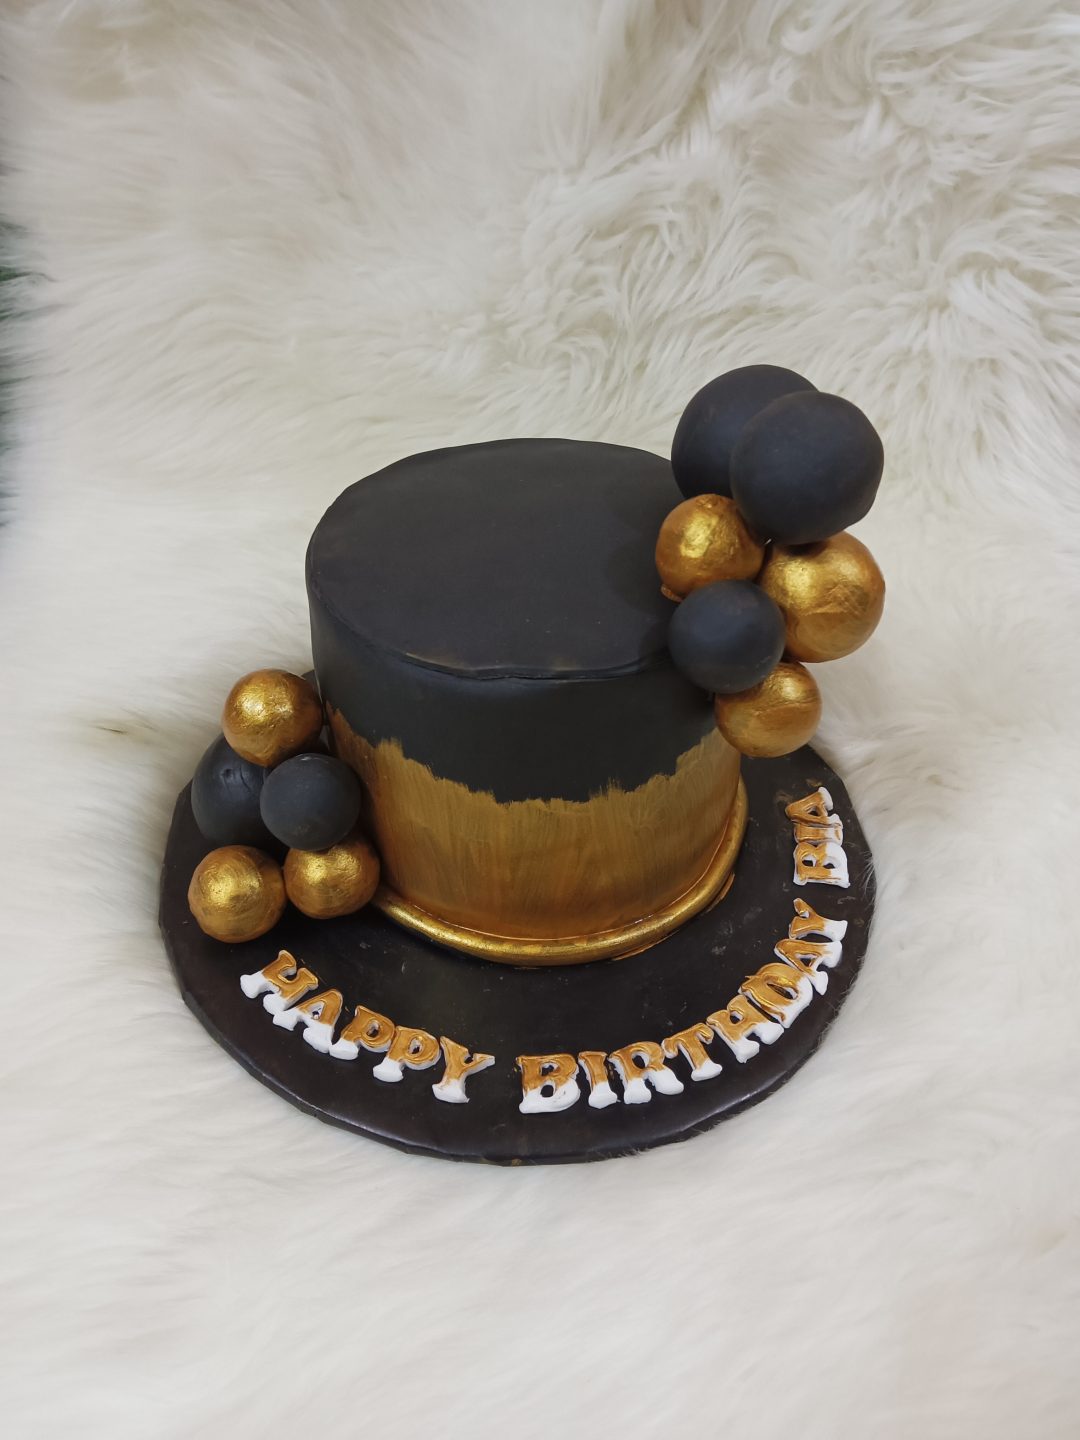 Black and gold theme full fondant cake